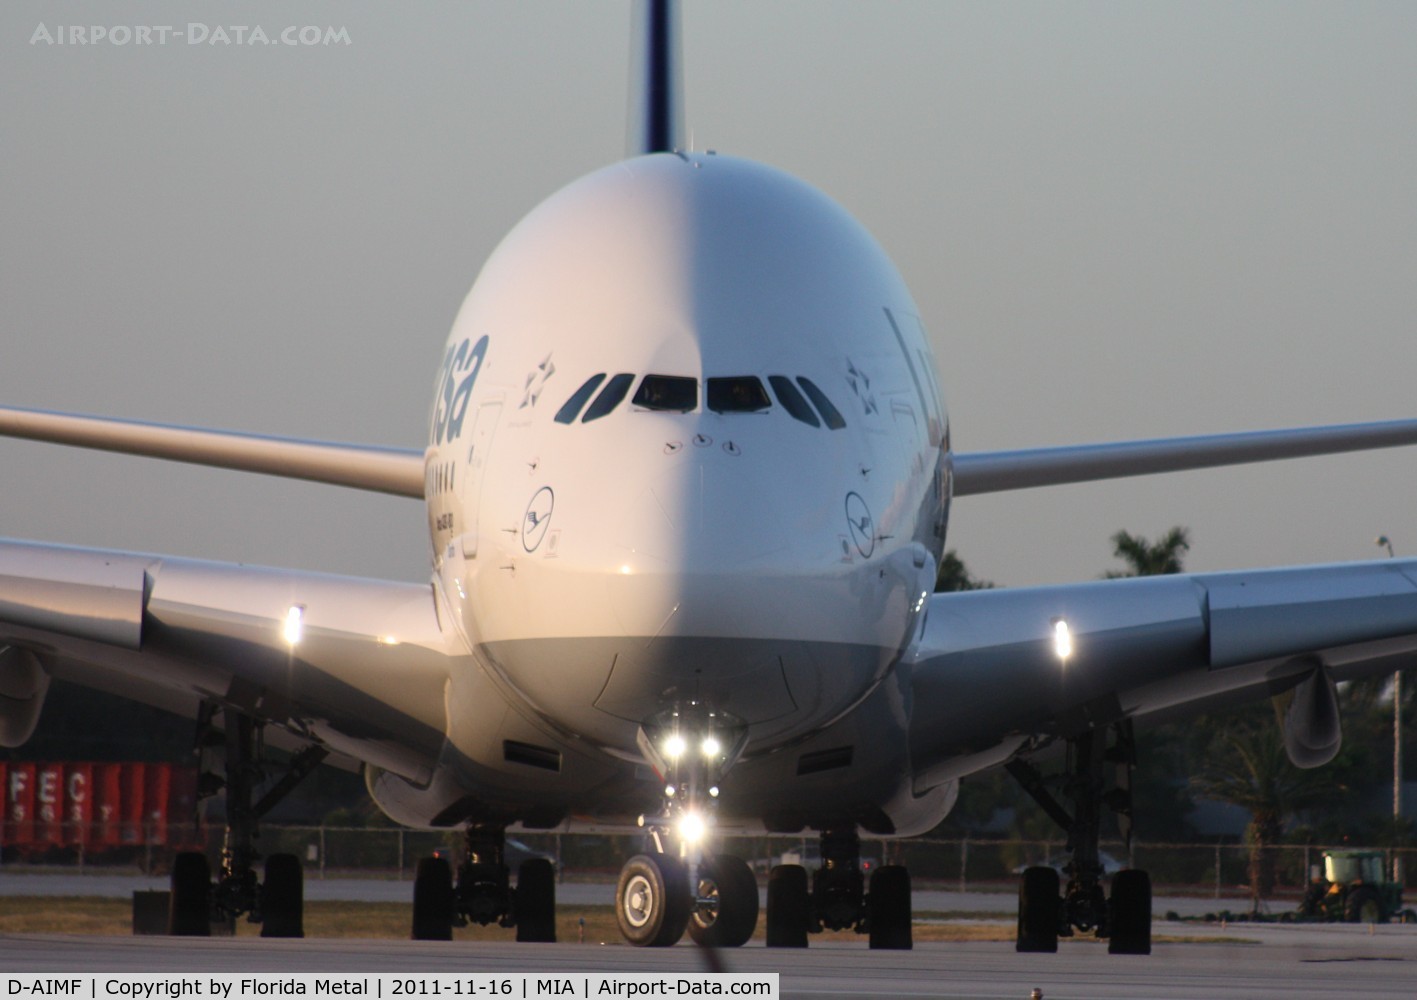 D-AIMF, 2011 Airbus A380-841 C/N 066, Lufthansa A380 head on